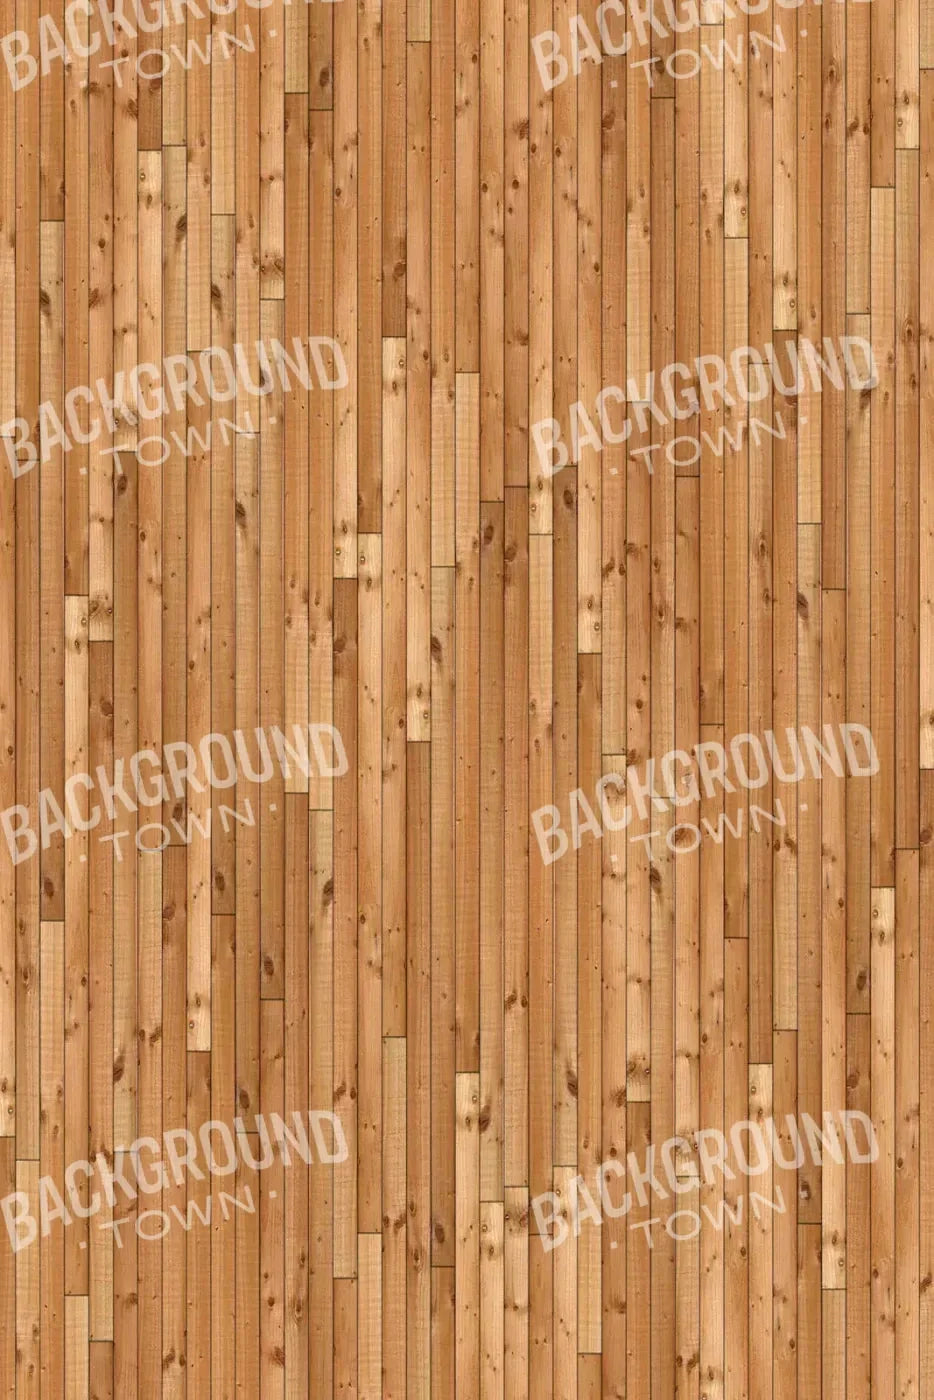 Bamboo Rubbermat Floor 4X5 ( 48 X 60 Inch )